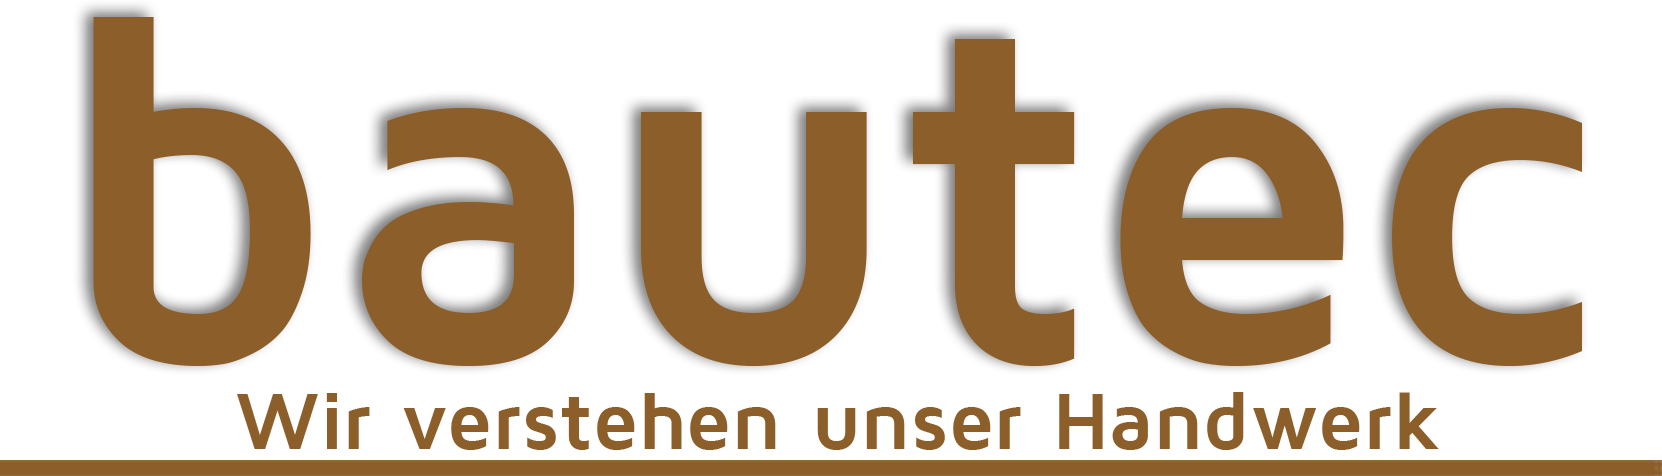 Bautec Logo